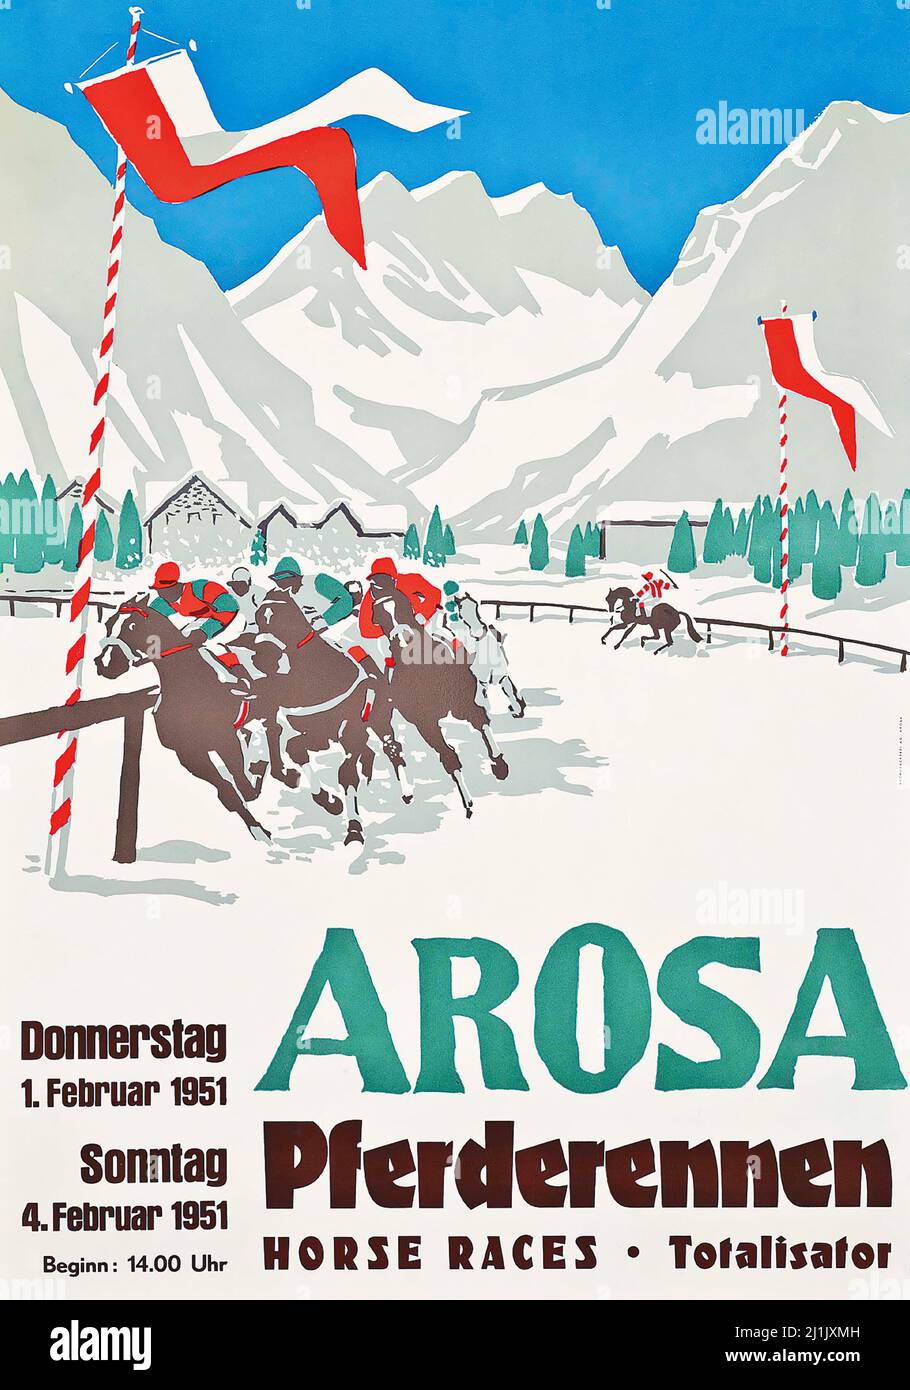 Affiche de voyage vintage AROSA PFERDERENNEN course de chevaux. 1951. Artiste anonyme. Banque D'Images